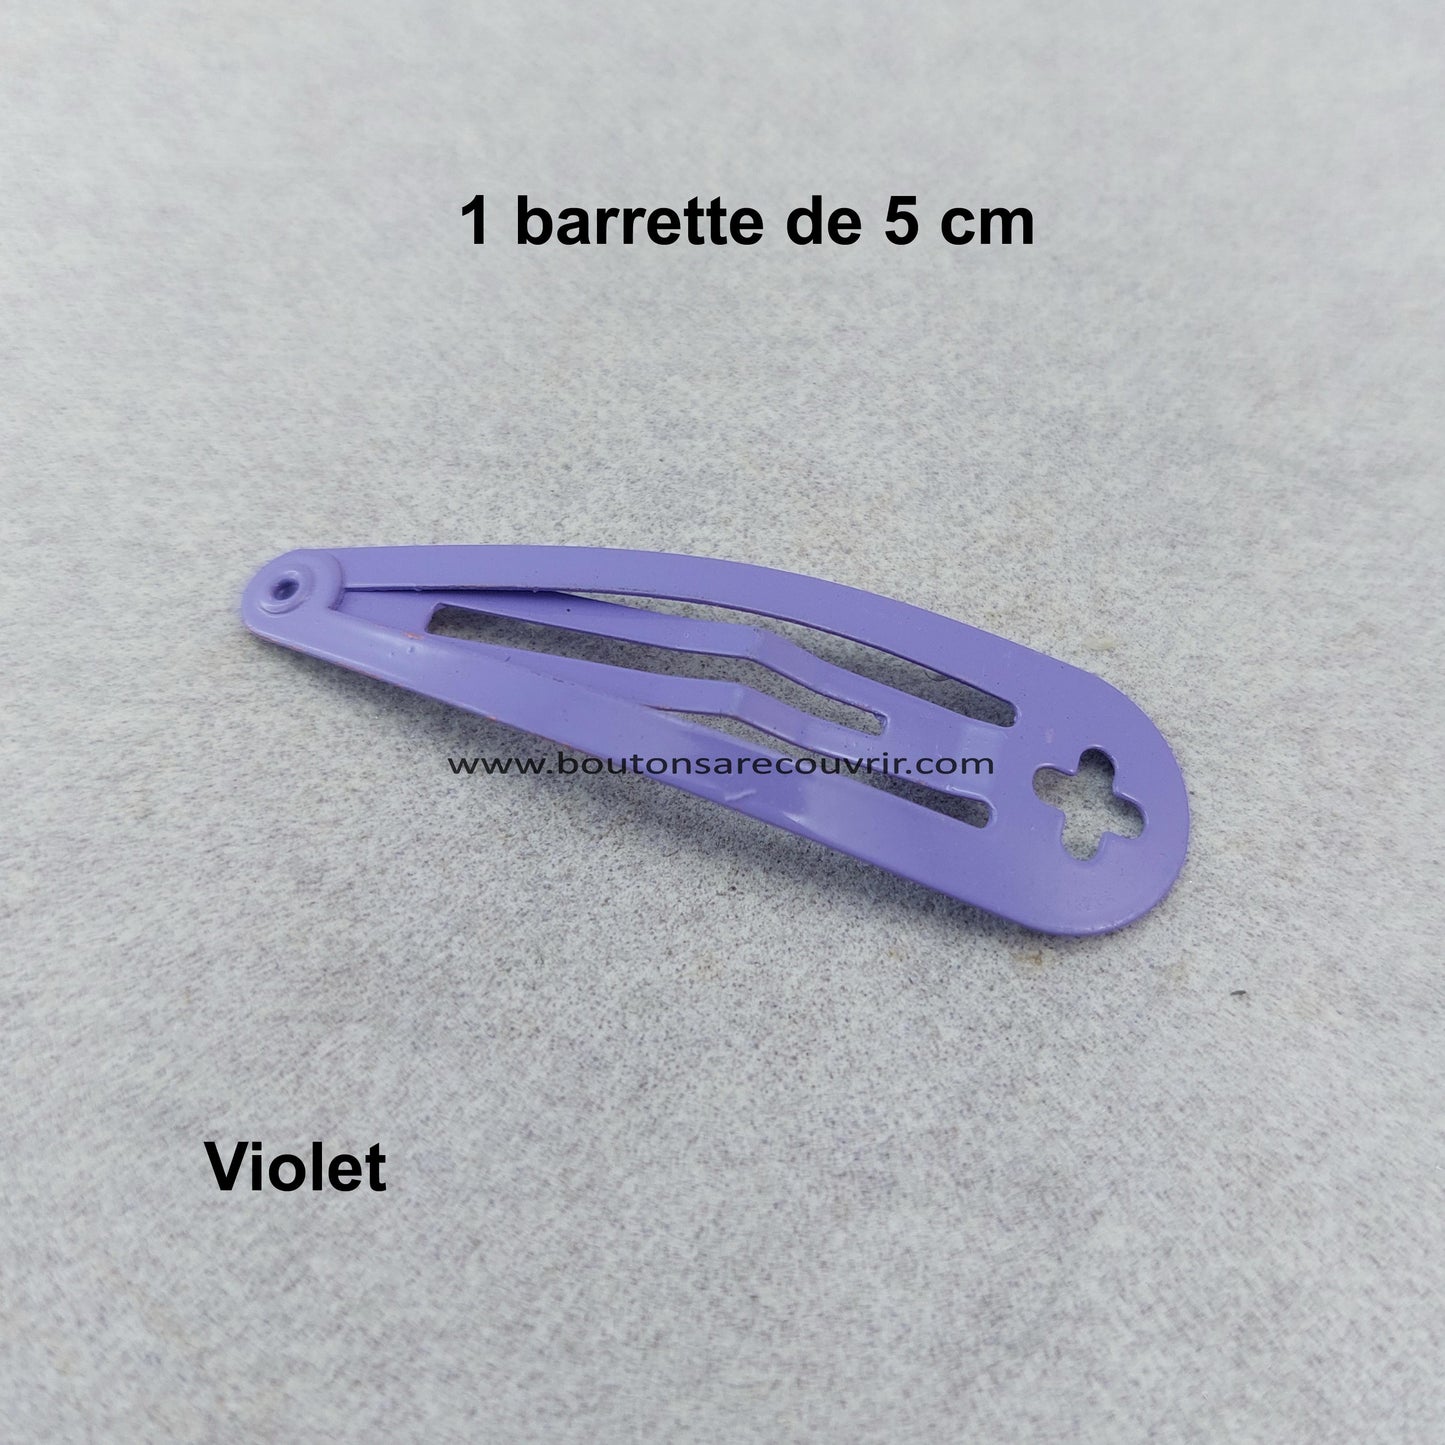 Barrette violette de 5 cm